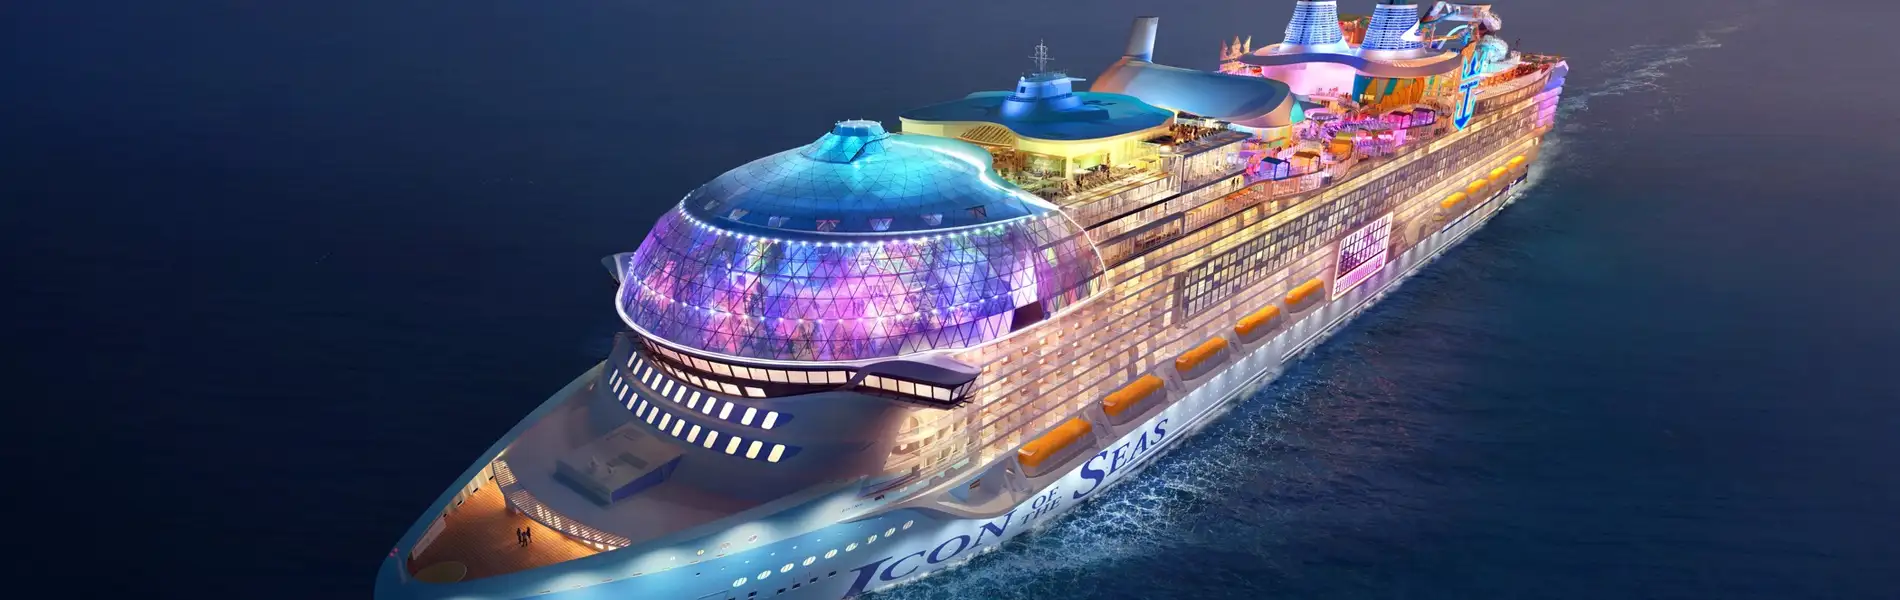 Hoàn thiện siêu du thuyền Icon of the Seas lớn nhất thế giới